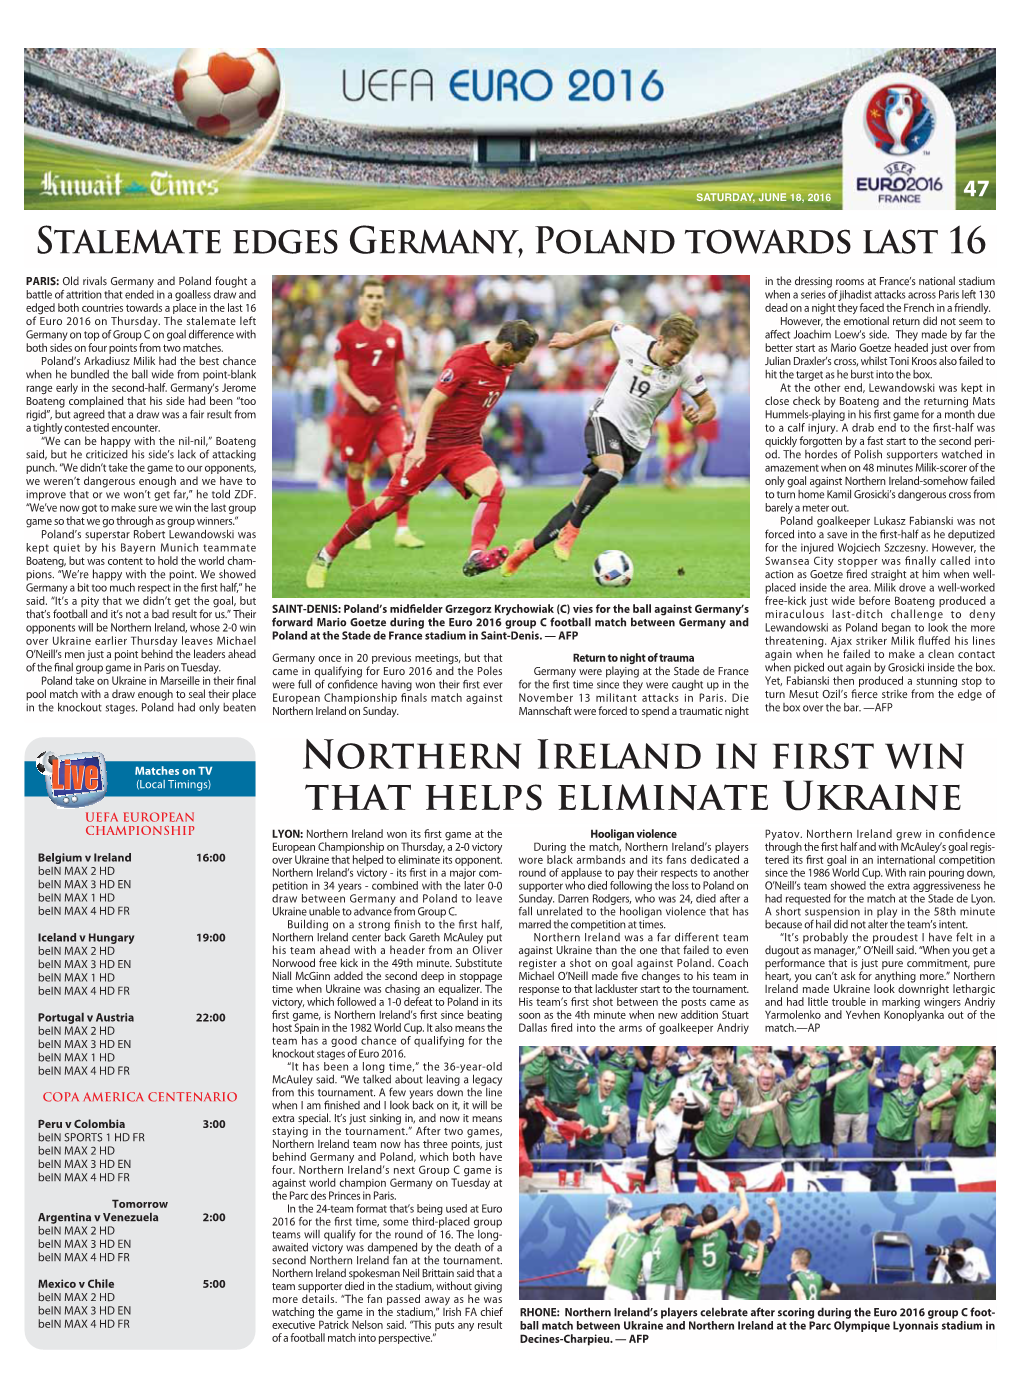 Northern Ireland in First Win That Helps Eliminate Ukraine